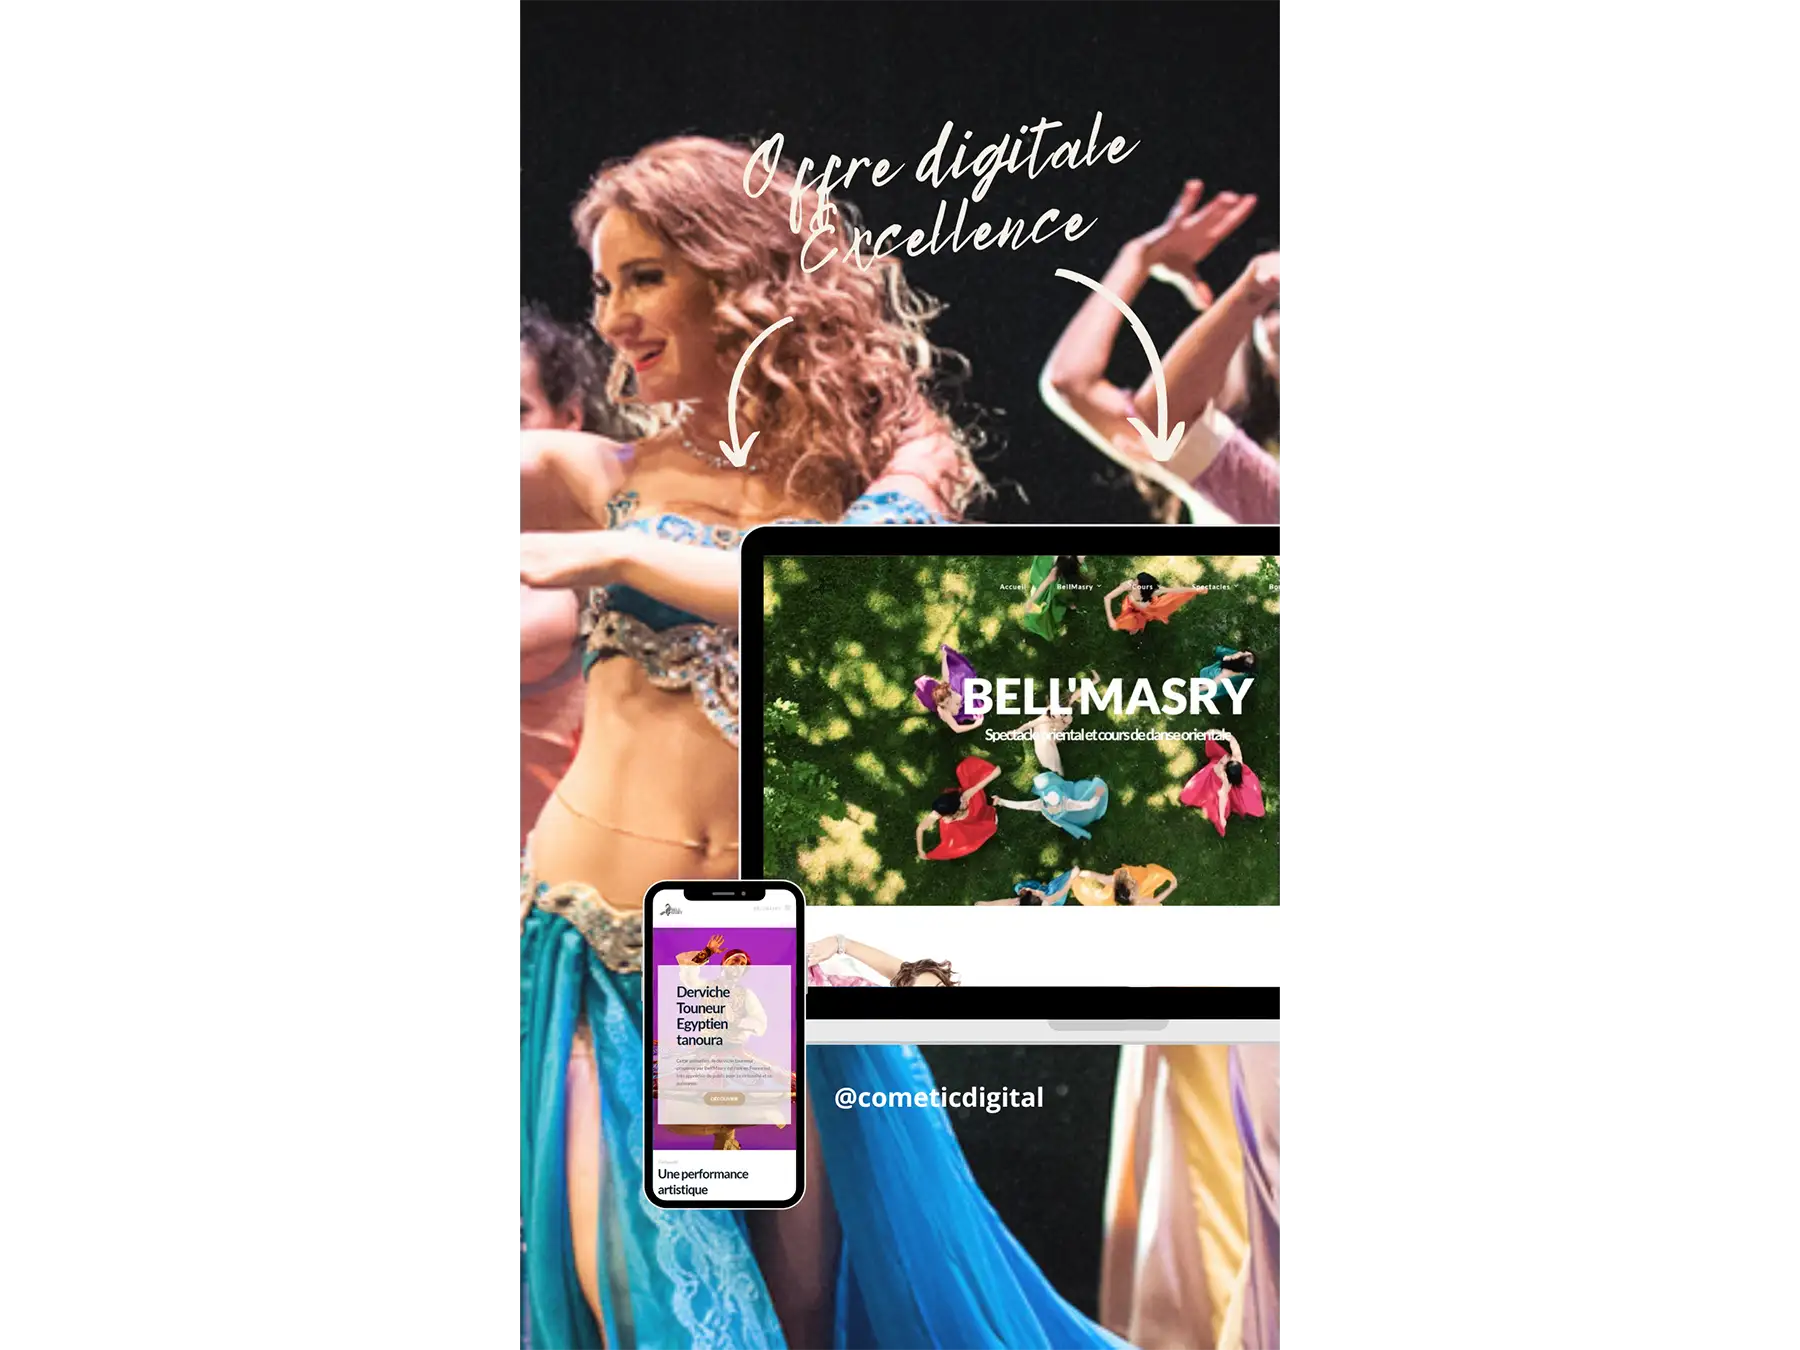 La compagnie de danse orientale "Bell'Masry a bénéficié de notre offre digitale "excellence" pour la refonte de son site Web